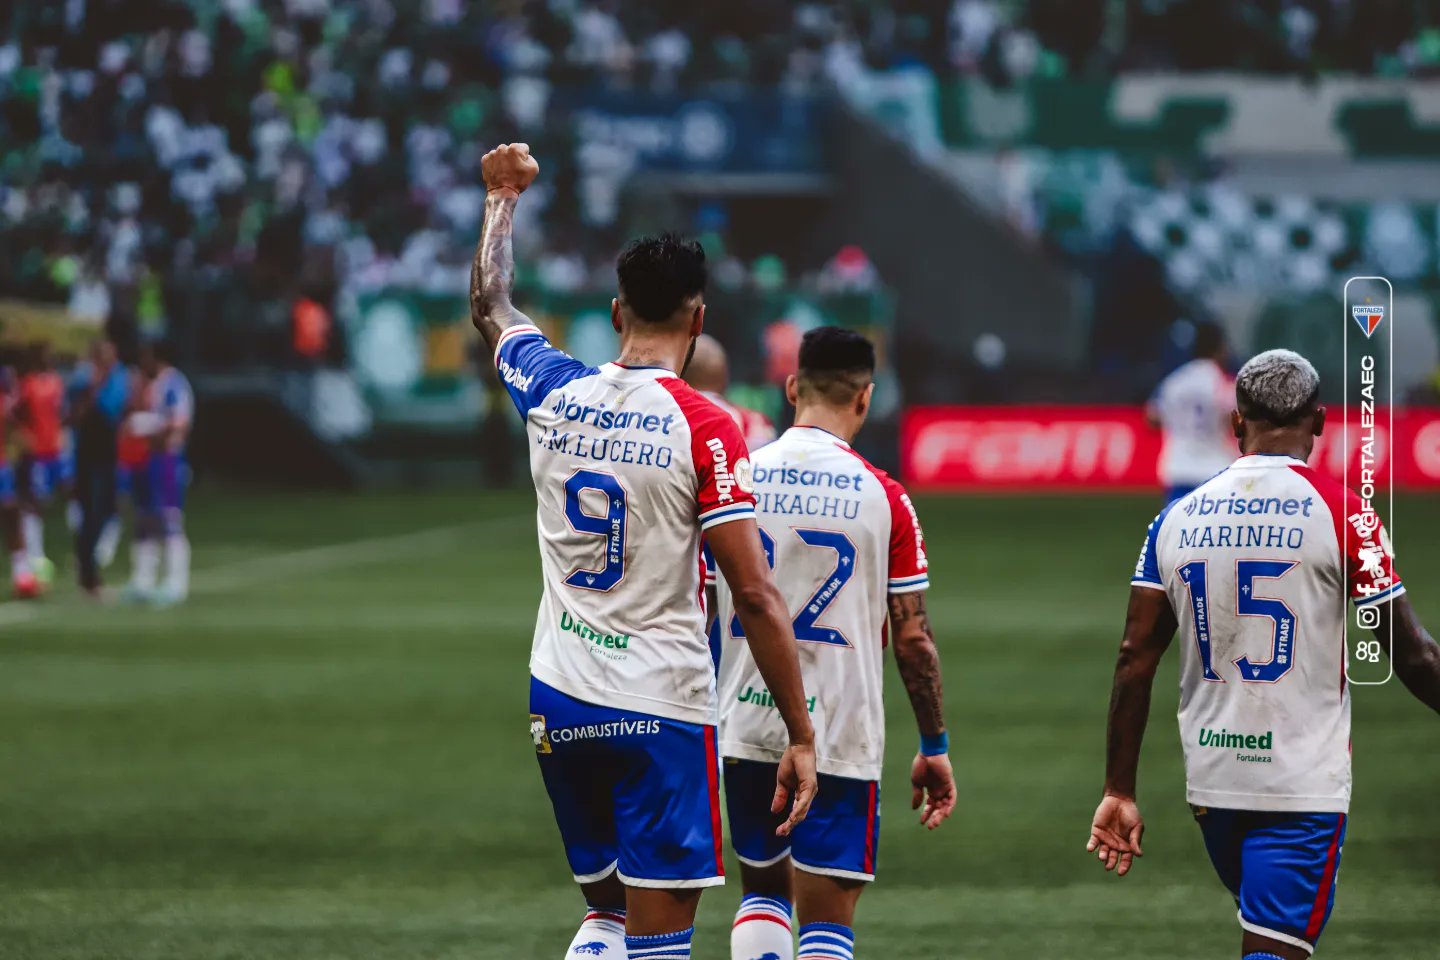 Lucero com o braço erguido junto de Pikachu e Marinho após o gol de empate do Fortaleza. (Foto: Felipe Cruz/FEC)